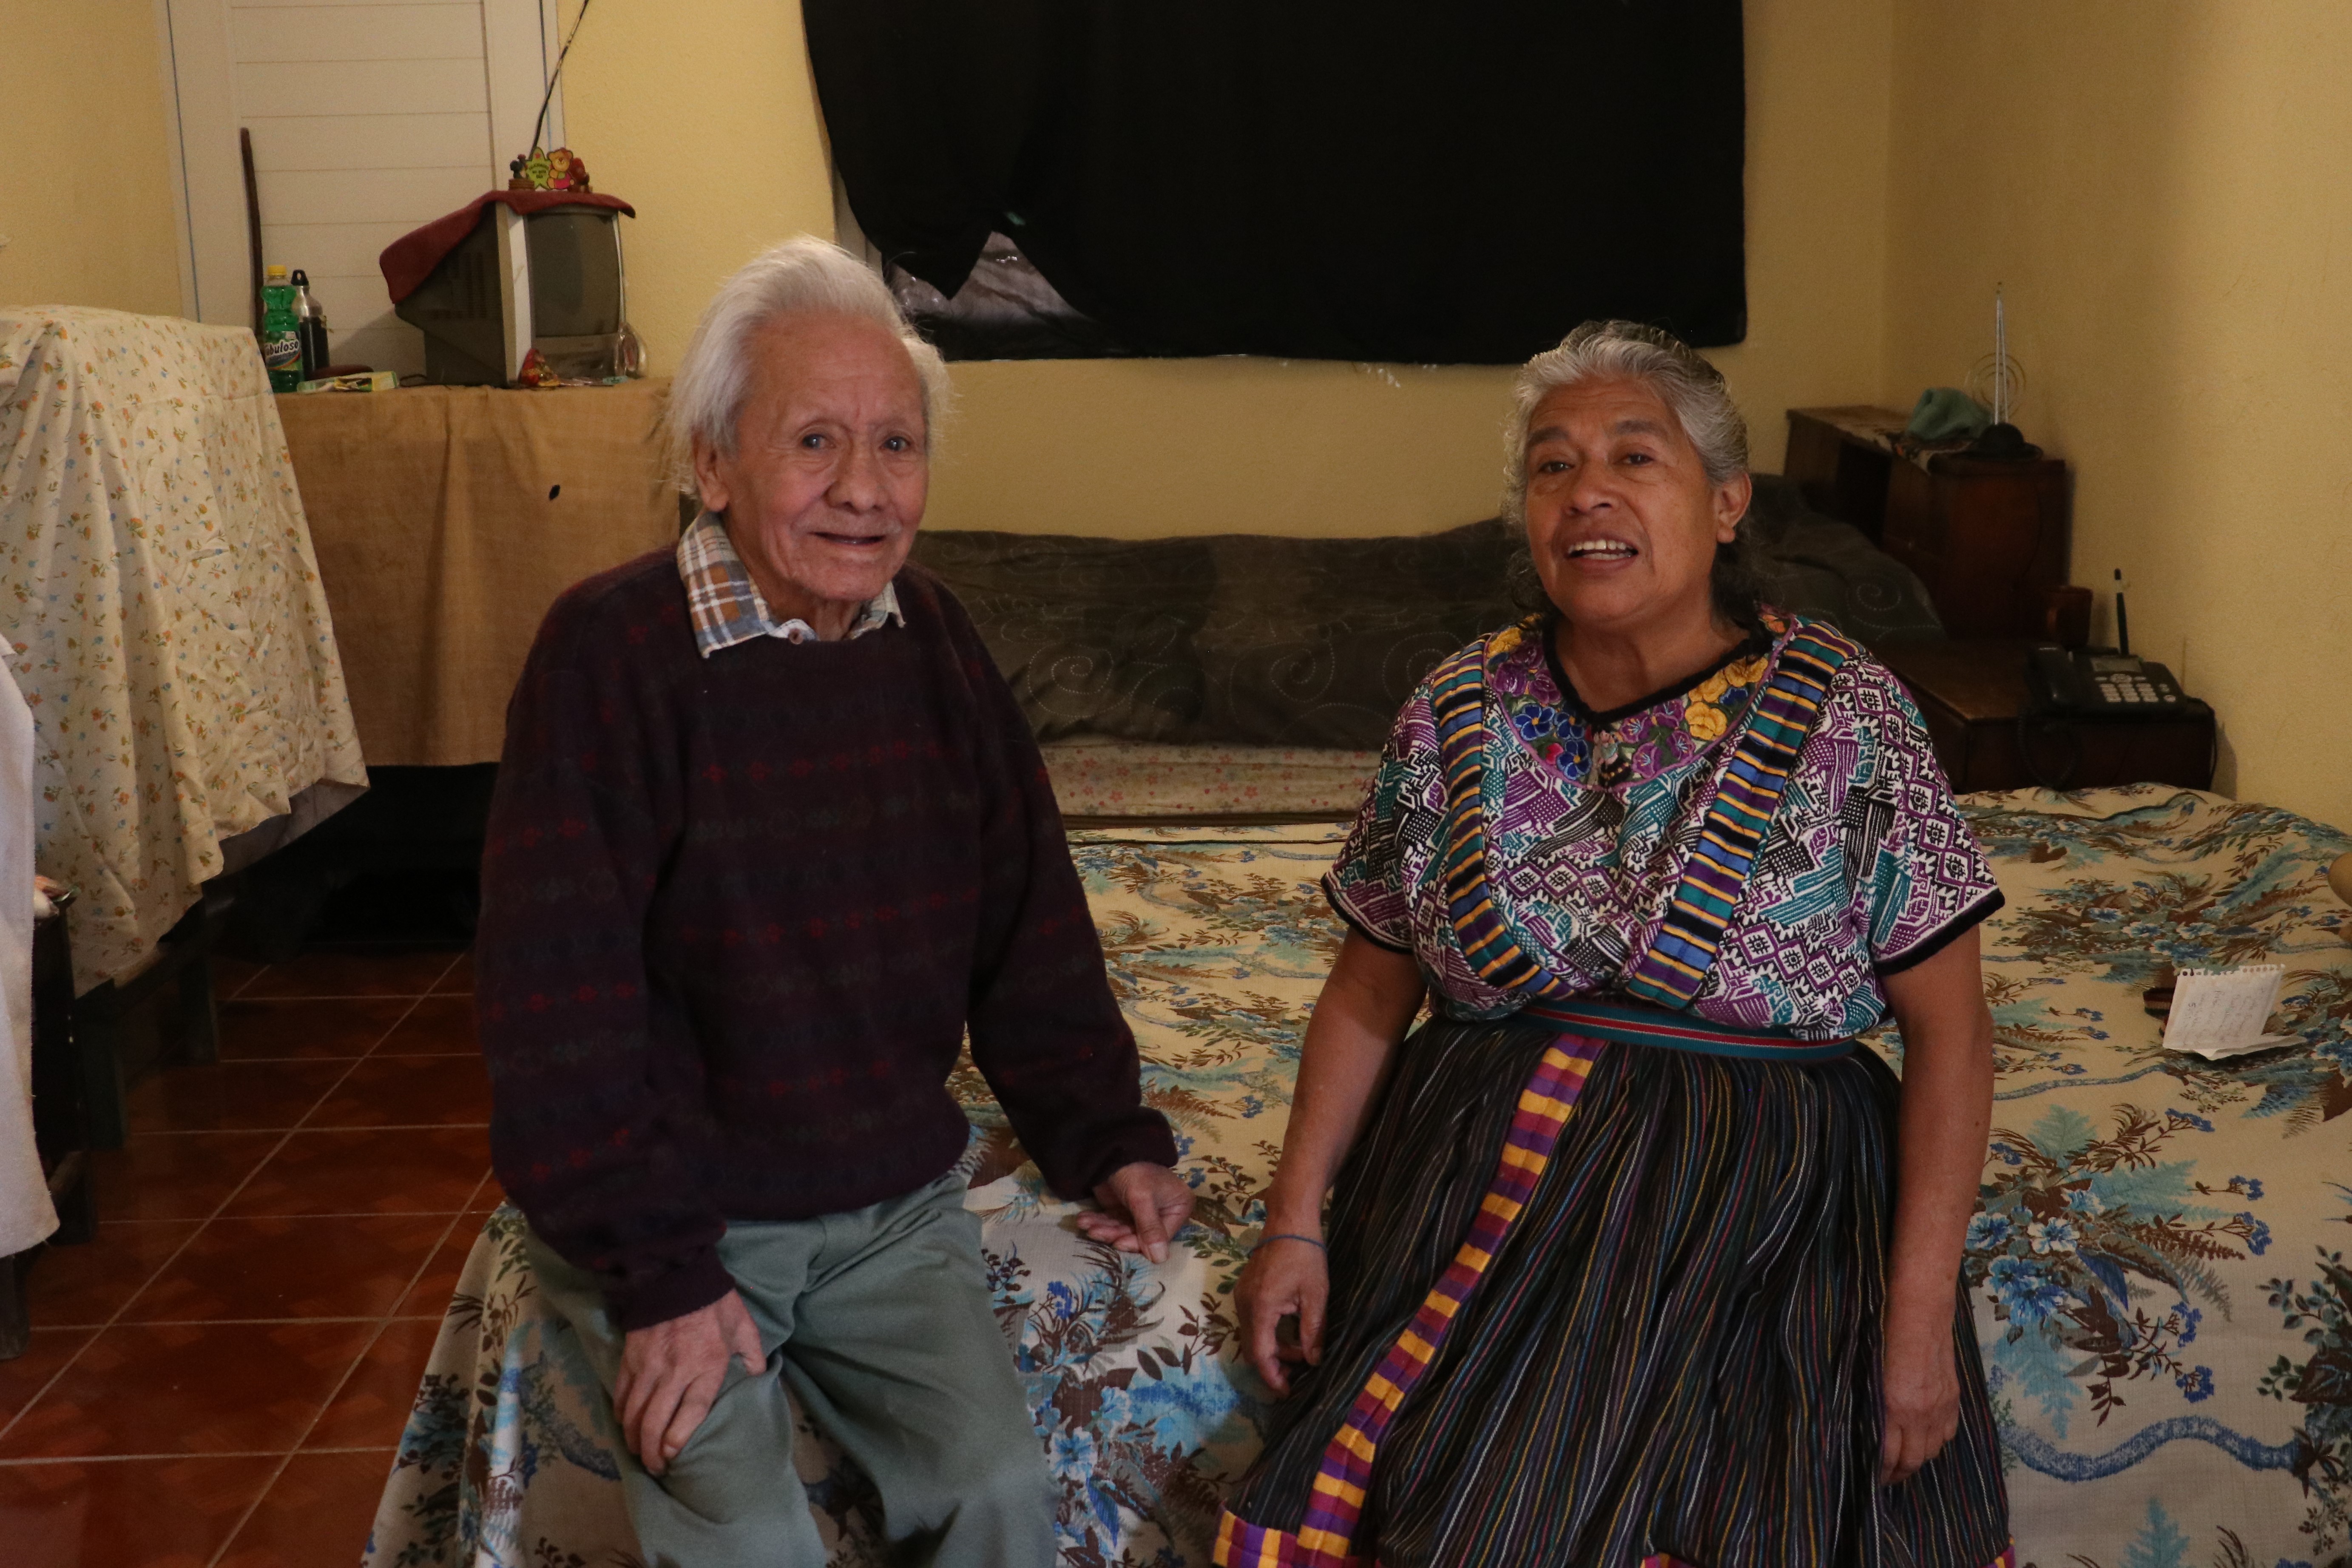 Don José y doña Blanca mostraron su felicidad por tener un lugar mejor para vivir. (Foto Prensa Libre: Raúl Juárez)